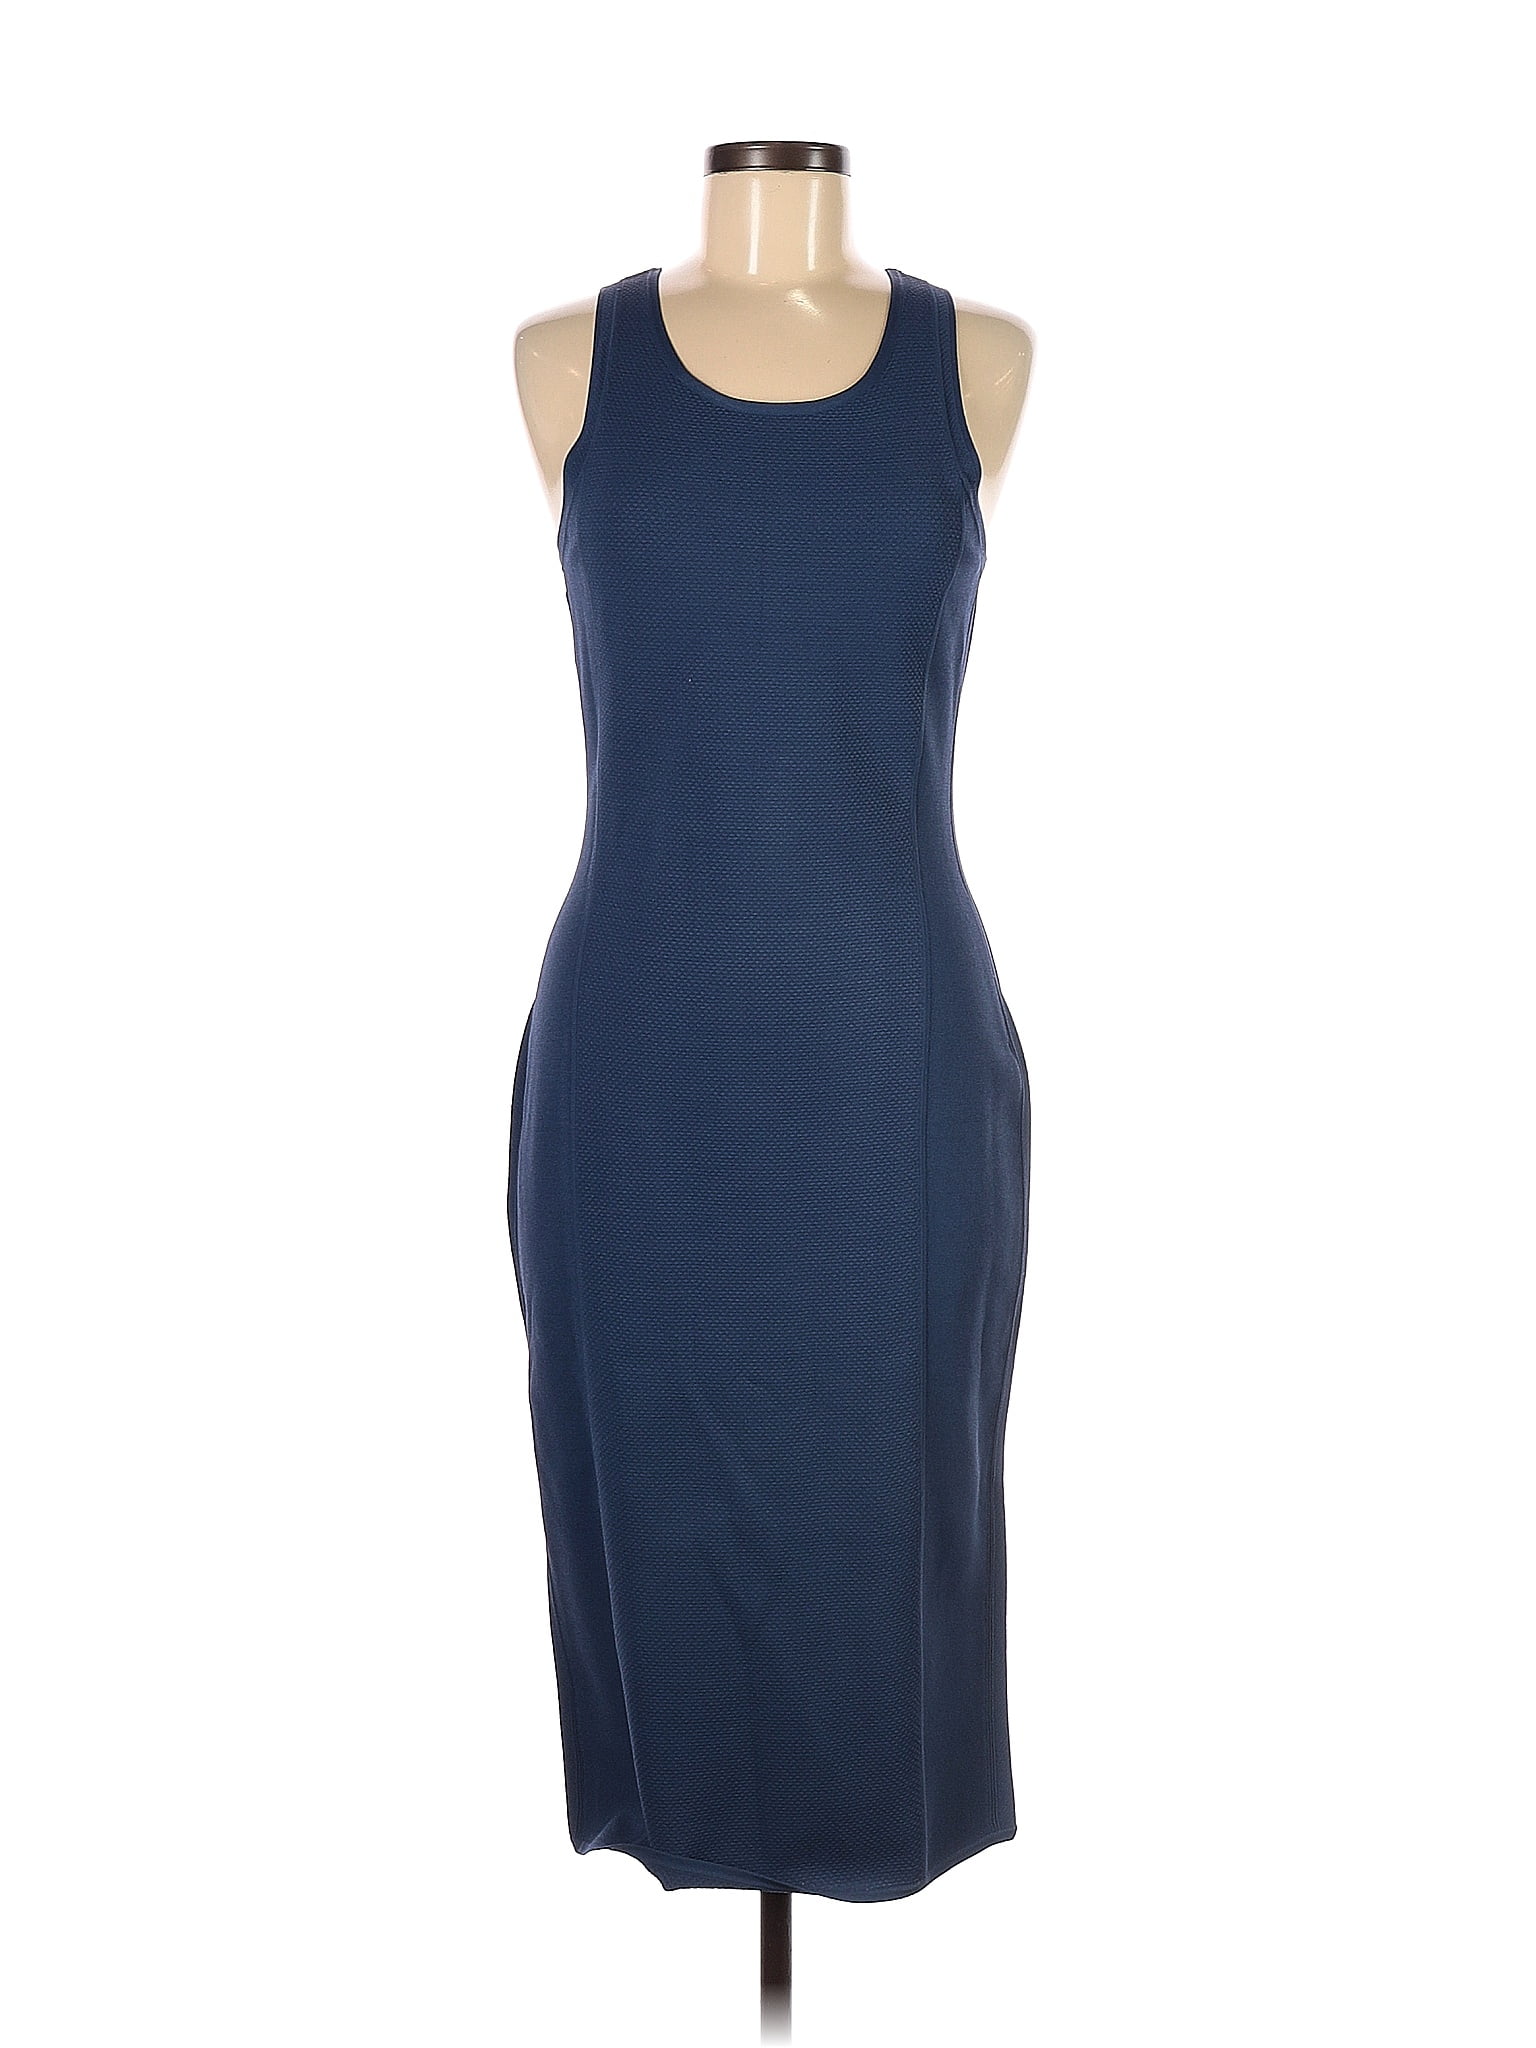 Diane von Furstenberg | Dress 82% Blue - off M Casual Size thredUP